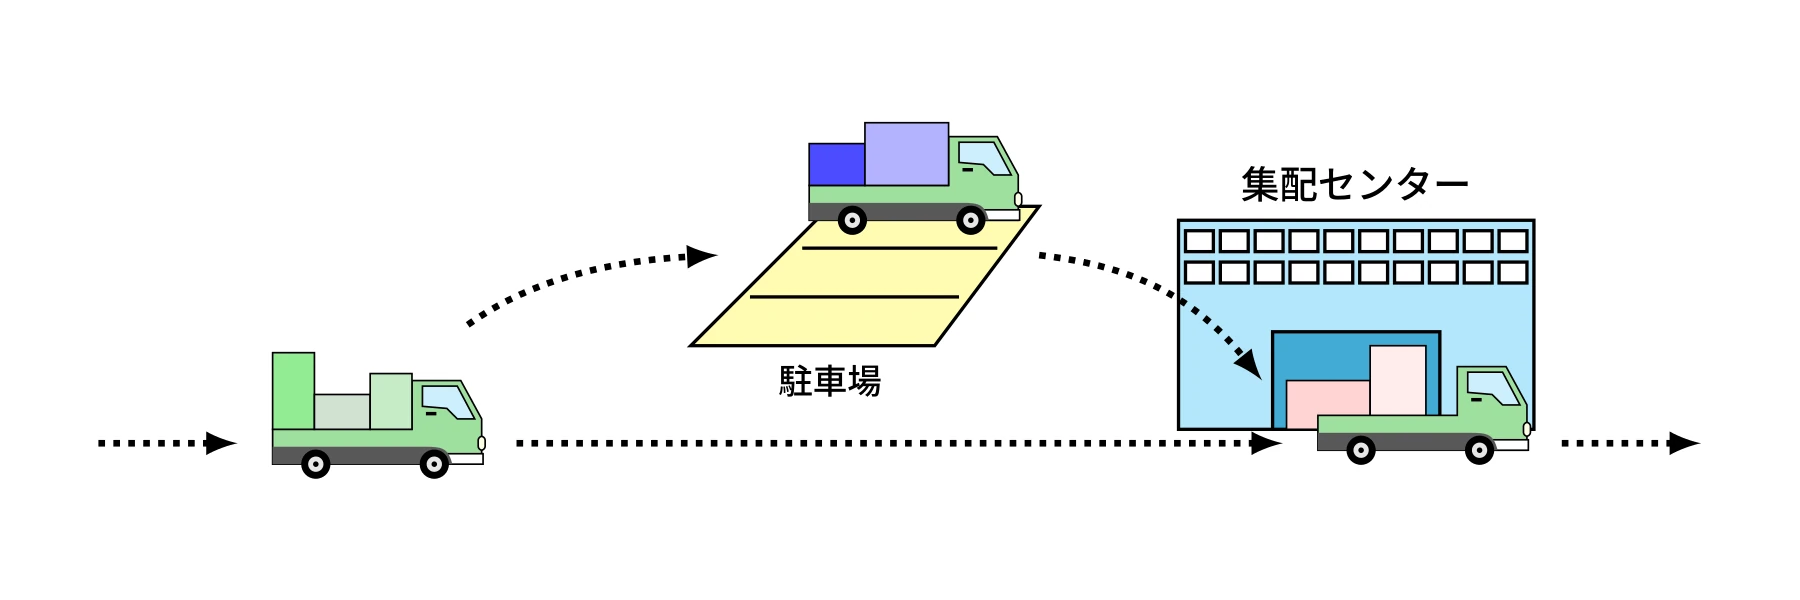 (図1) 駐車場での待機を考慮した集配センターでの荷降ろし作業スケジューリング